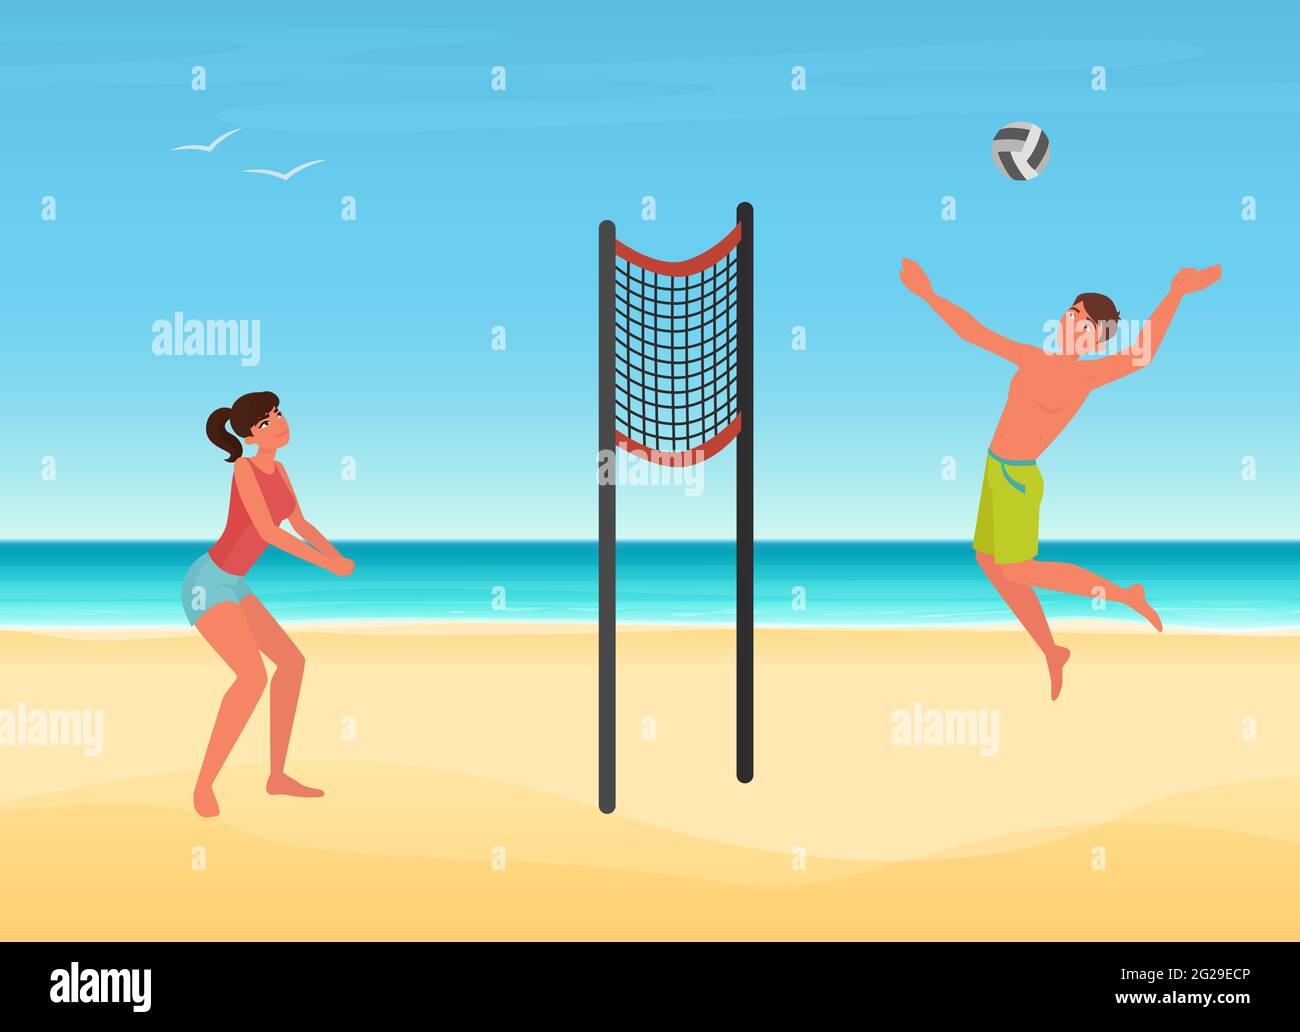 Les couples jouent au volley-ball sur la plage d'été de l'île tropicale illustration vectorielle. Caricature jeune femme homme joueur personnage jouer ballon, saut, sports d'été Voyage arrière-plan de vacances Illustration de Vecteur